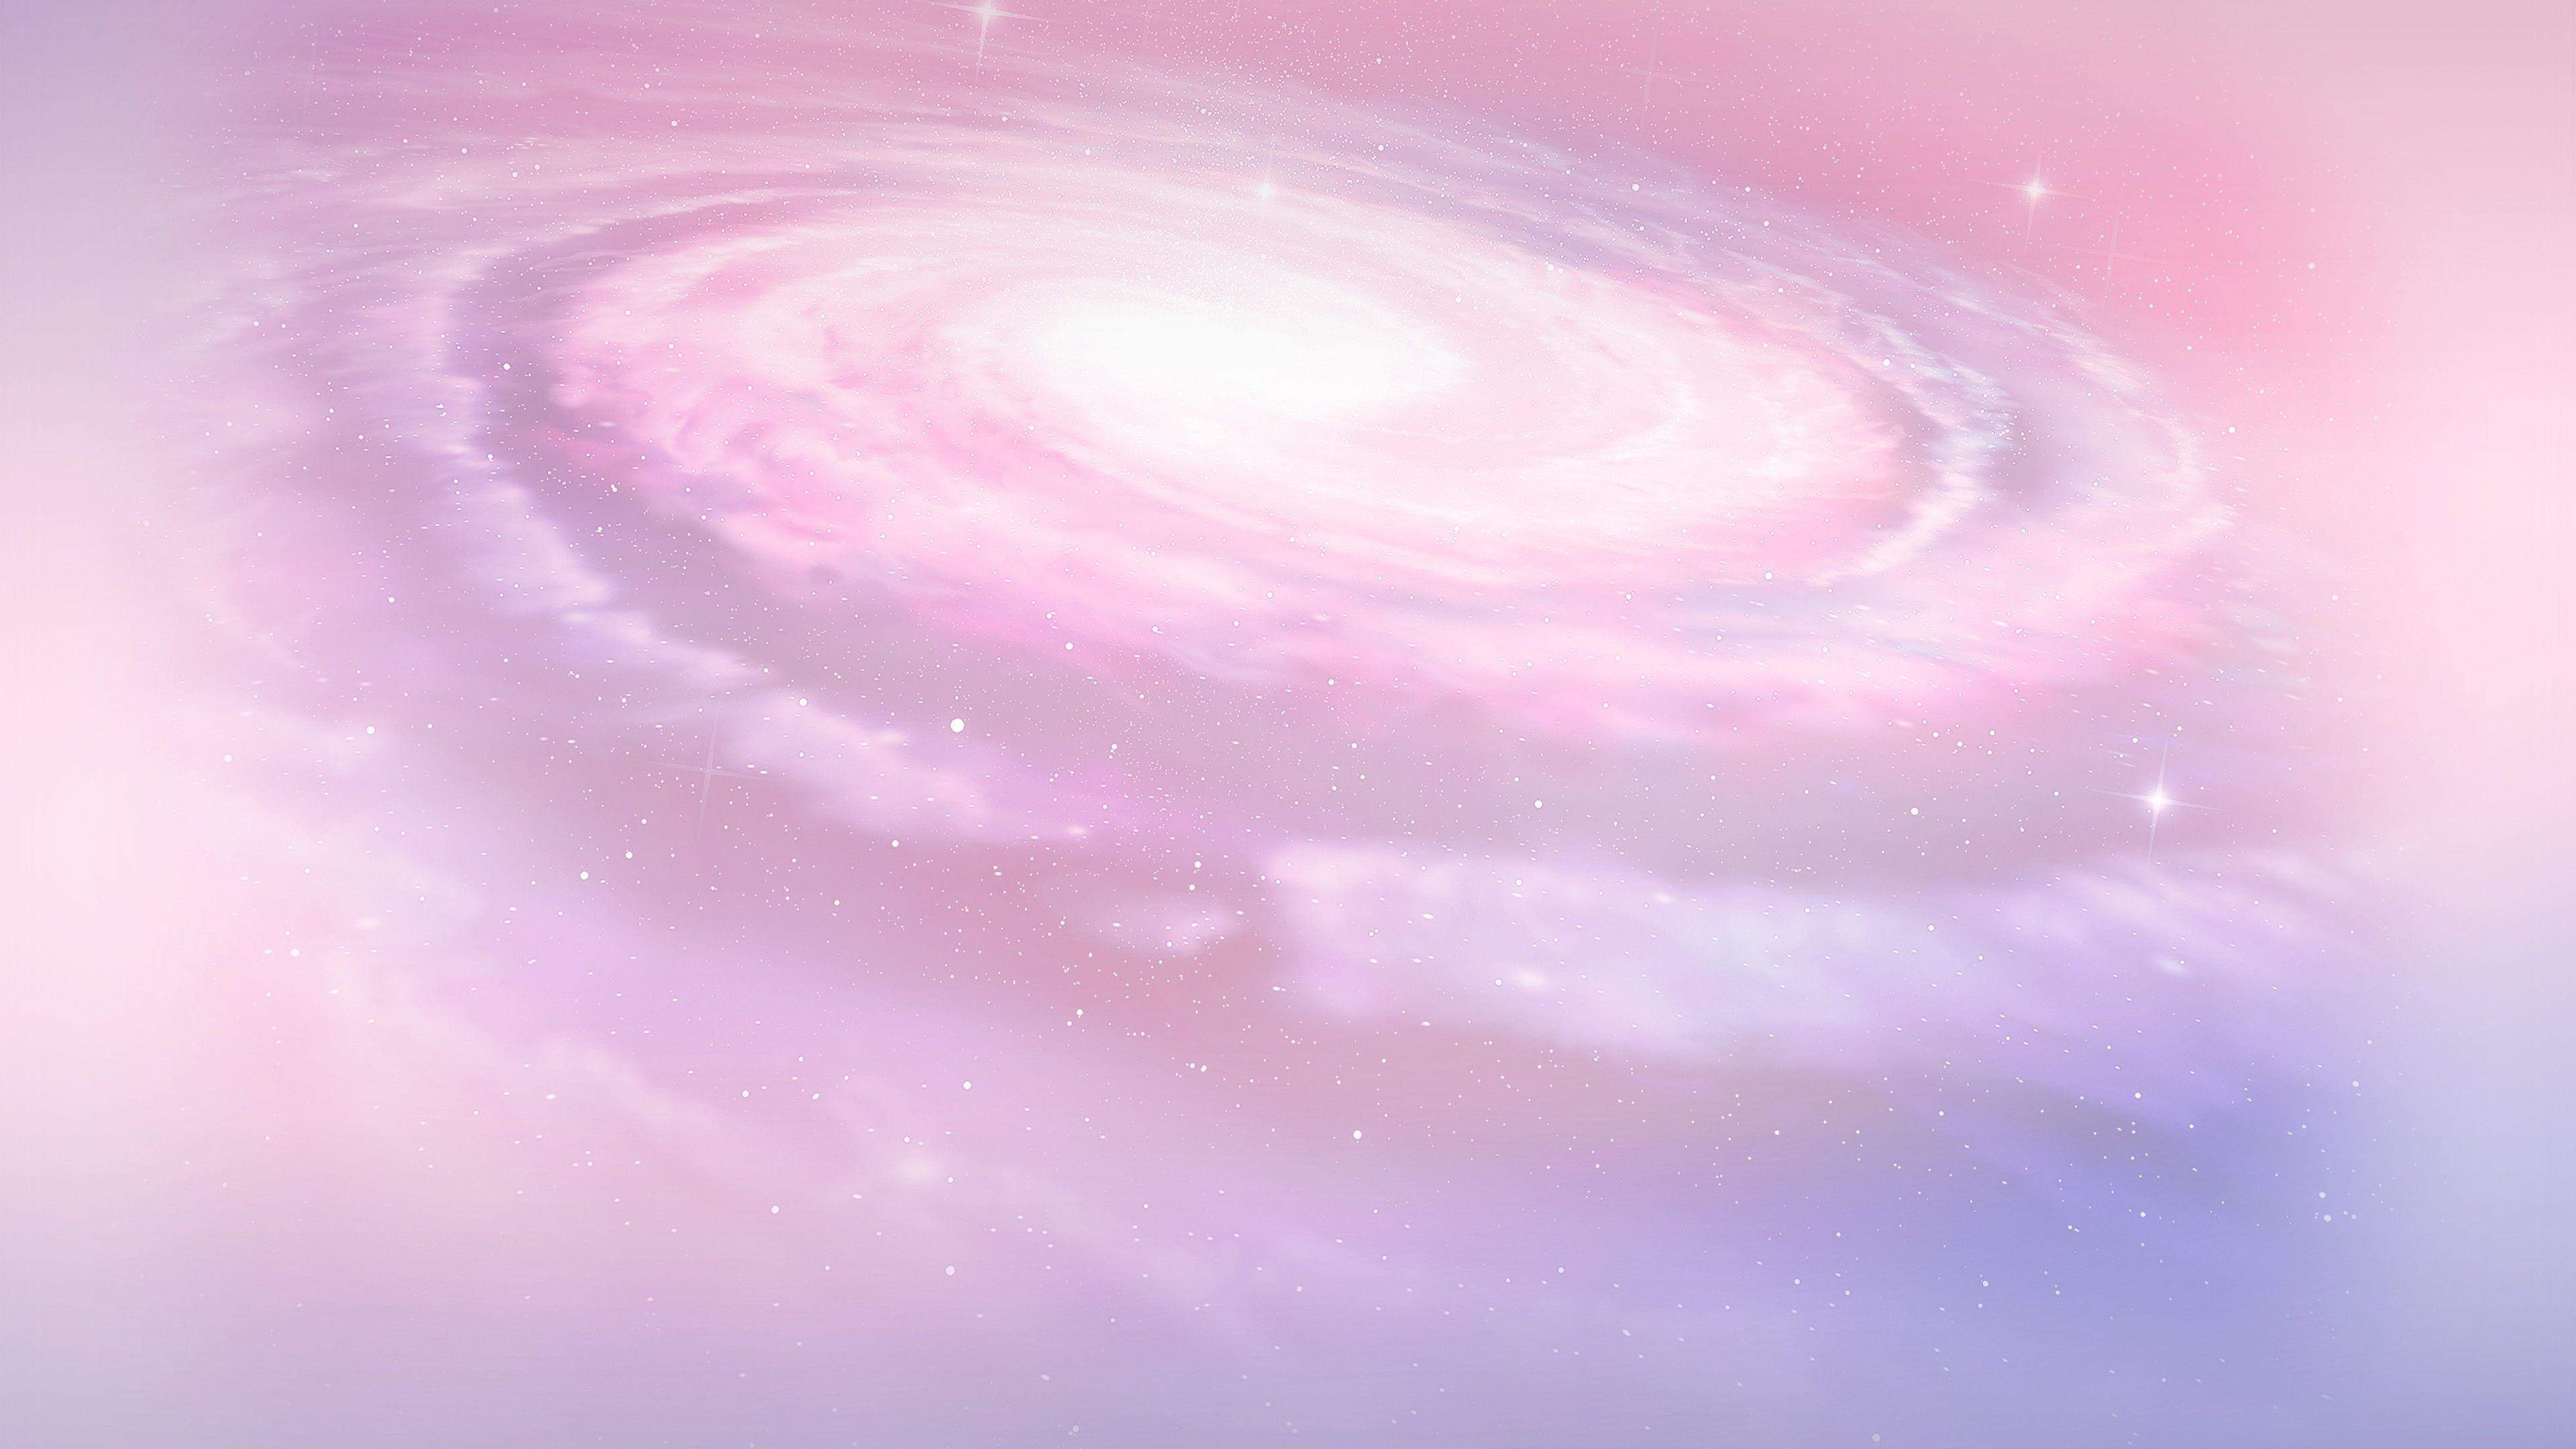 Hình nền điện thoại hồng vũ trụ đang là xu hướng hot hiện nay. Với hình nền này trên WallpaperDog, bạn sẽ được tận hưởng vẻ đẹp tuyệt vời của sao và vũ trụ với tông màu hồng nhẹ nhàng, thật đáng yêu.